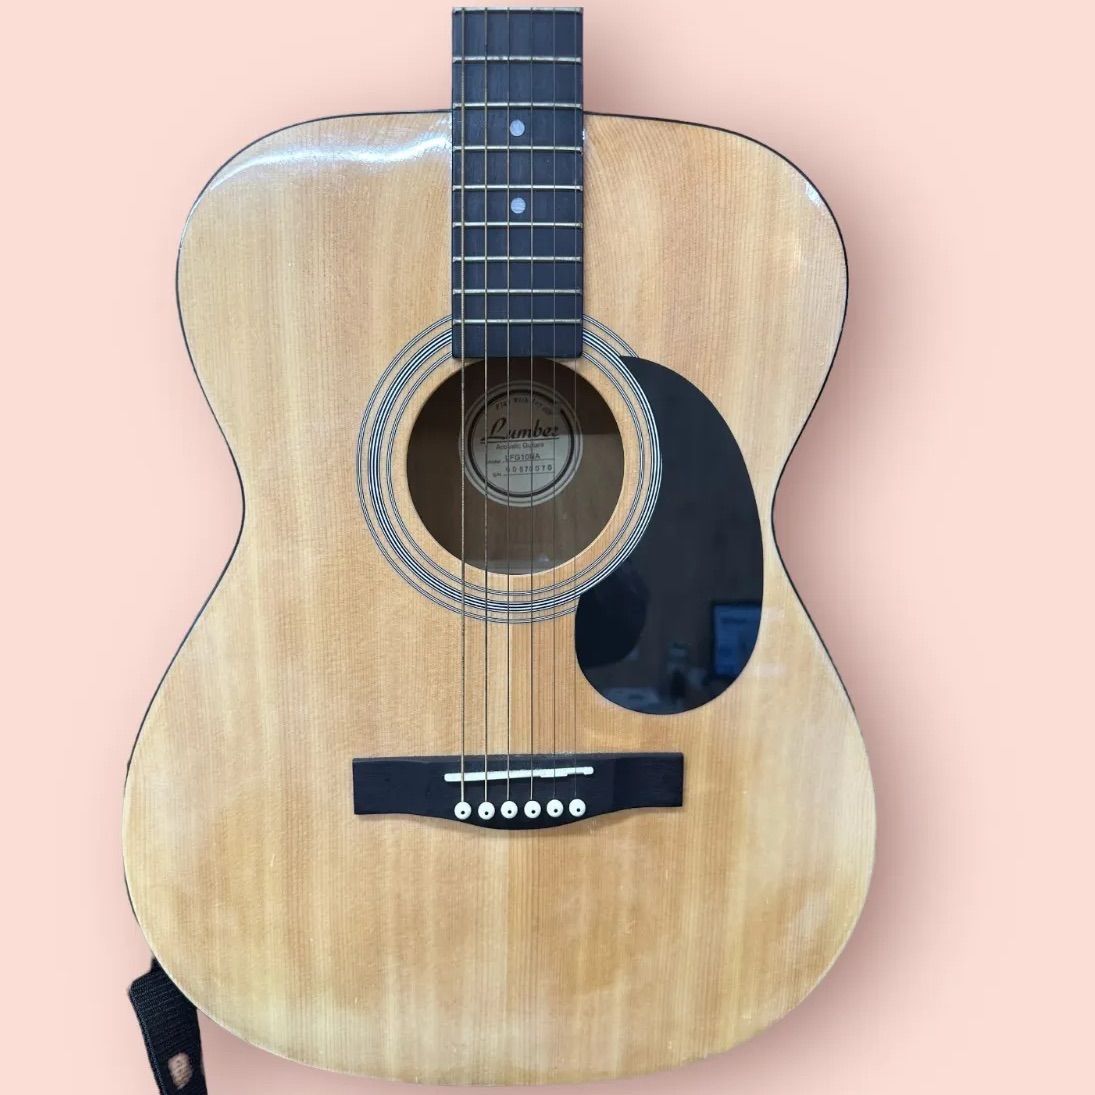 Lumber アコースティックギター LF3BLK - 弦楽器、ギター